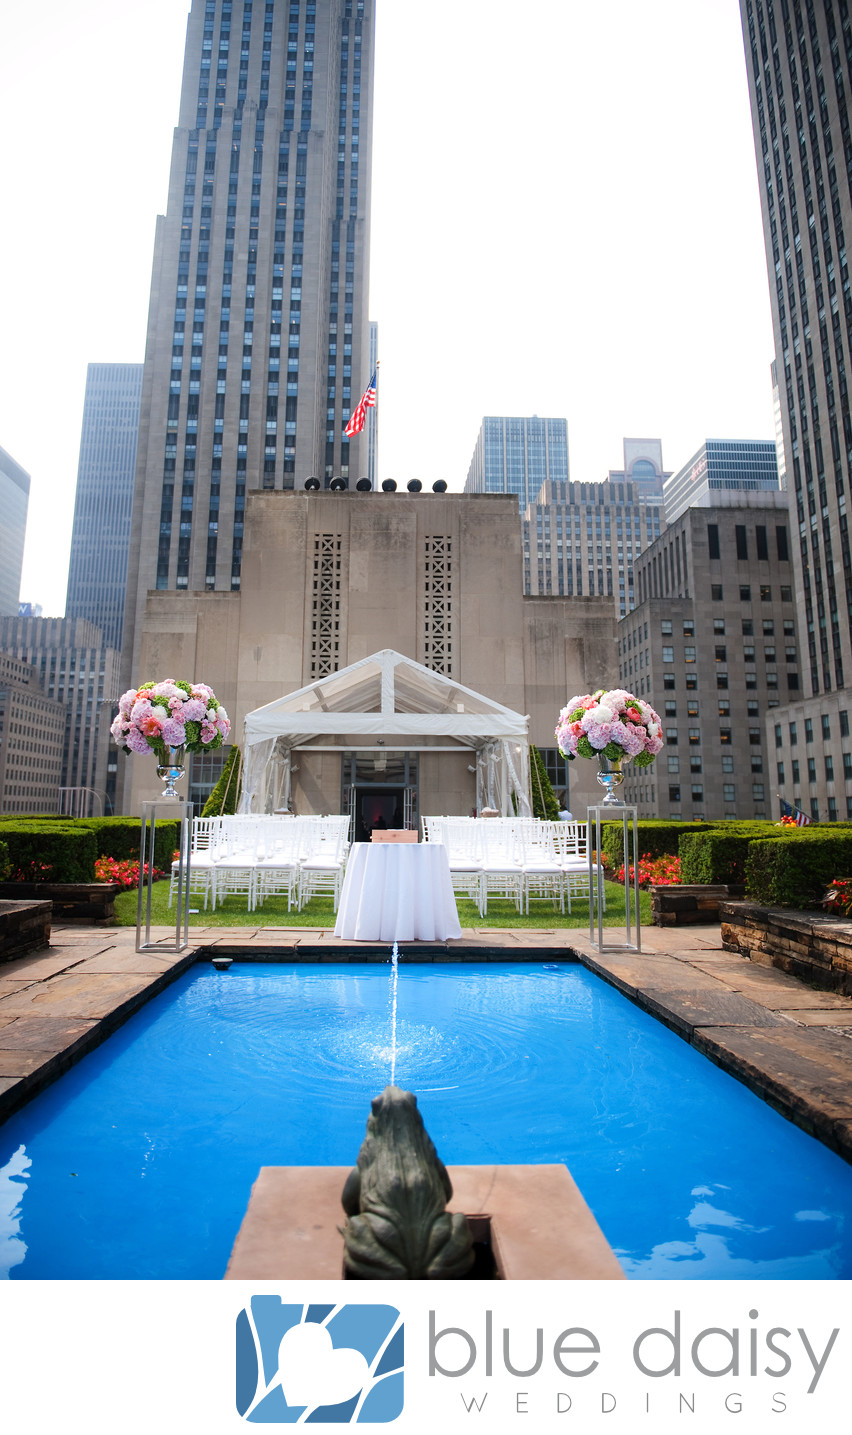 Rockefeller Center rooftop garden pool wedding ceremony